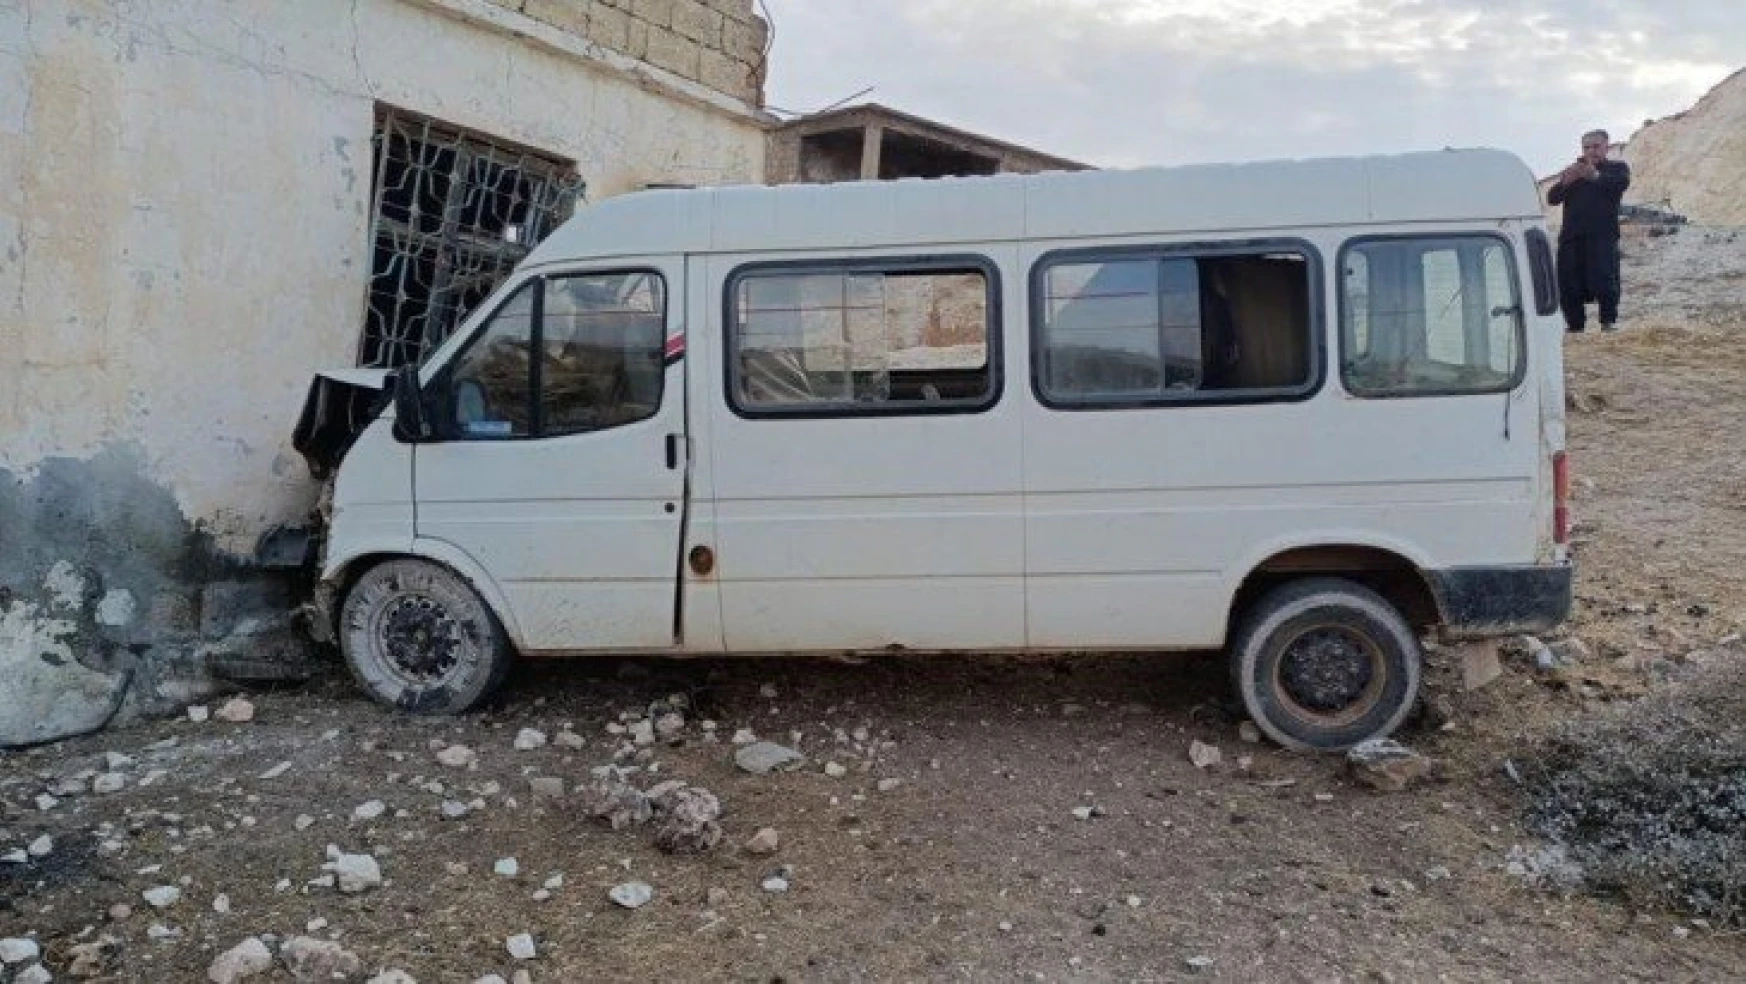 Tarım işçilerini taşıyan minibüs eve girdi: 15 yaralı